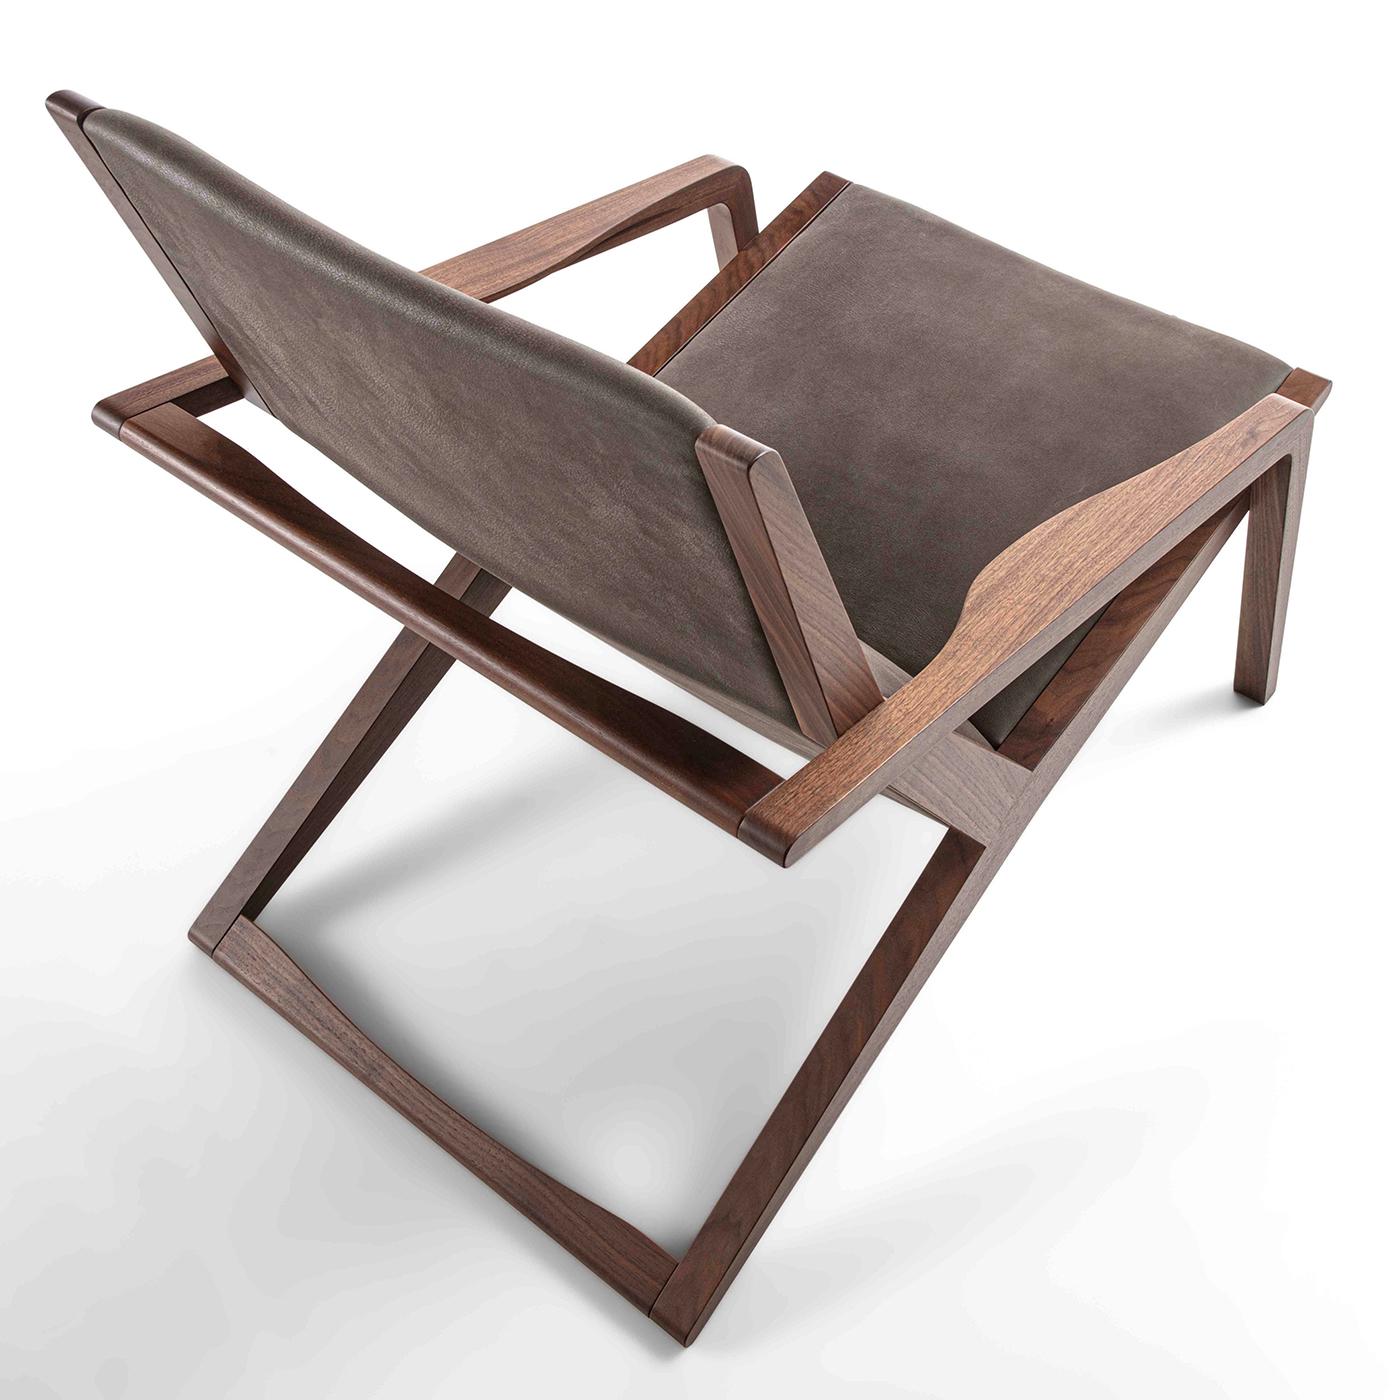 Mit seinem Design aus geraden Linien und sanften Kurven ist der Gazzella Sessel zeitlos und passt in eine Vielzahl von Umgebungen, von traditionell bis modern. Das Gestell ist aus Massivholz gefertigt und mit einem bequemen, gepolsterten Sitz mit